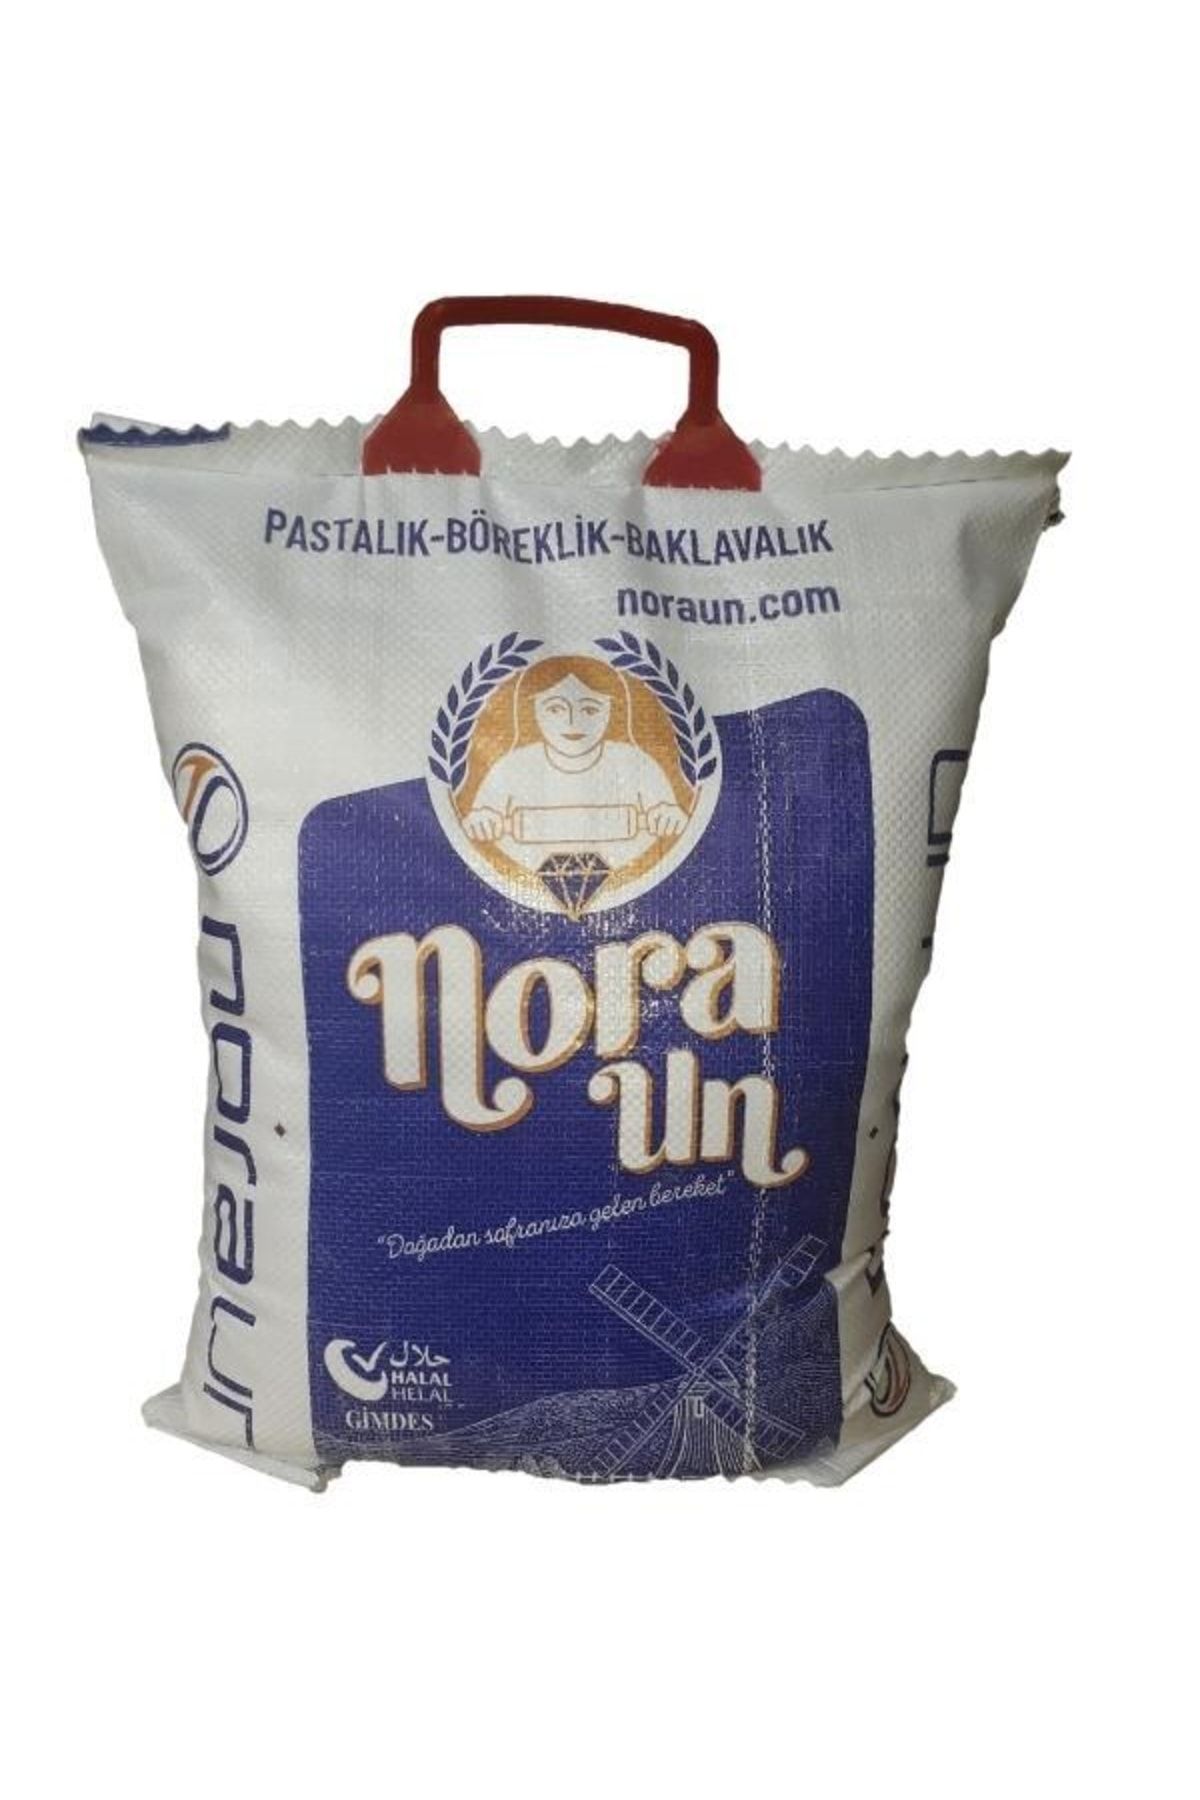 NORA UN Pastalık-böreklik-baklavalık Un 10 Kg (vegan)